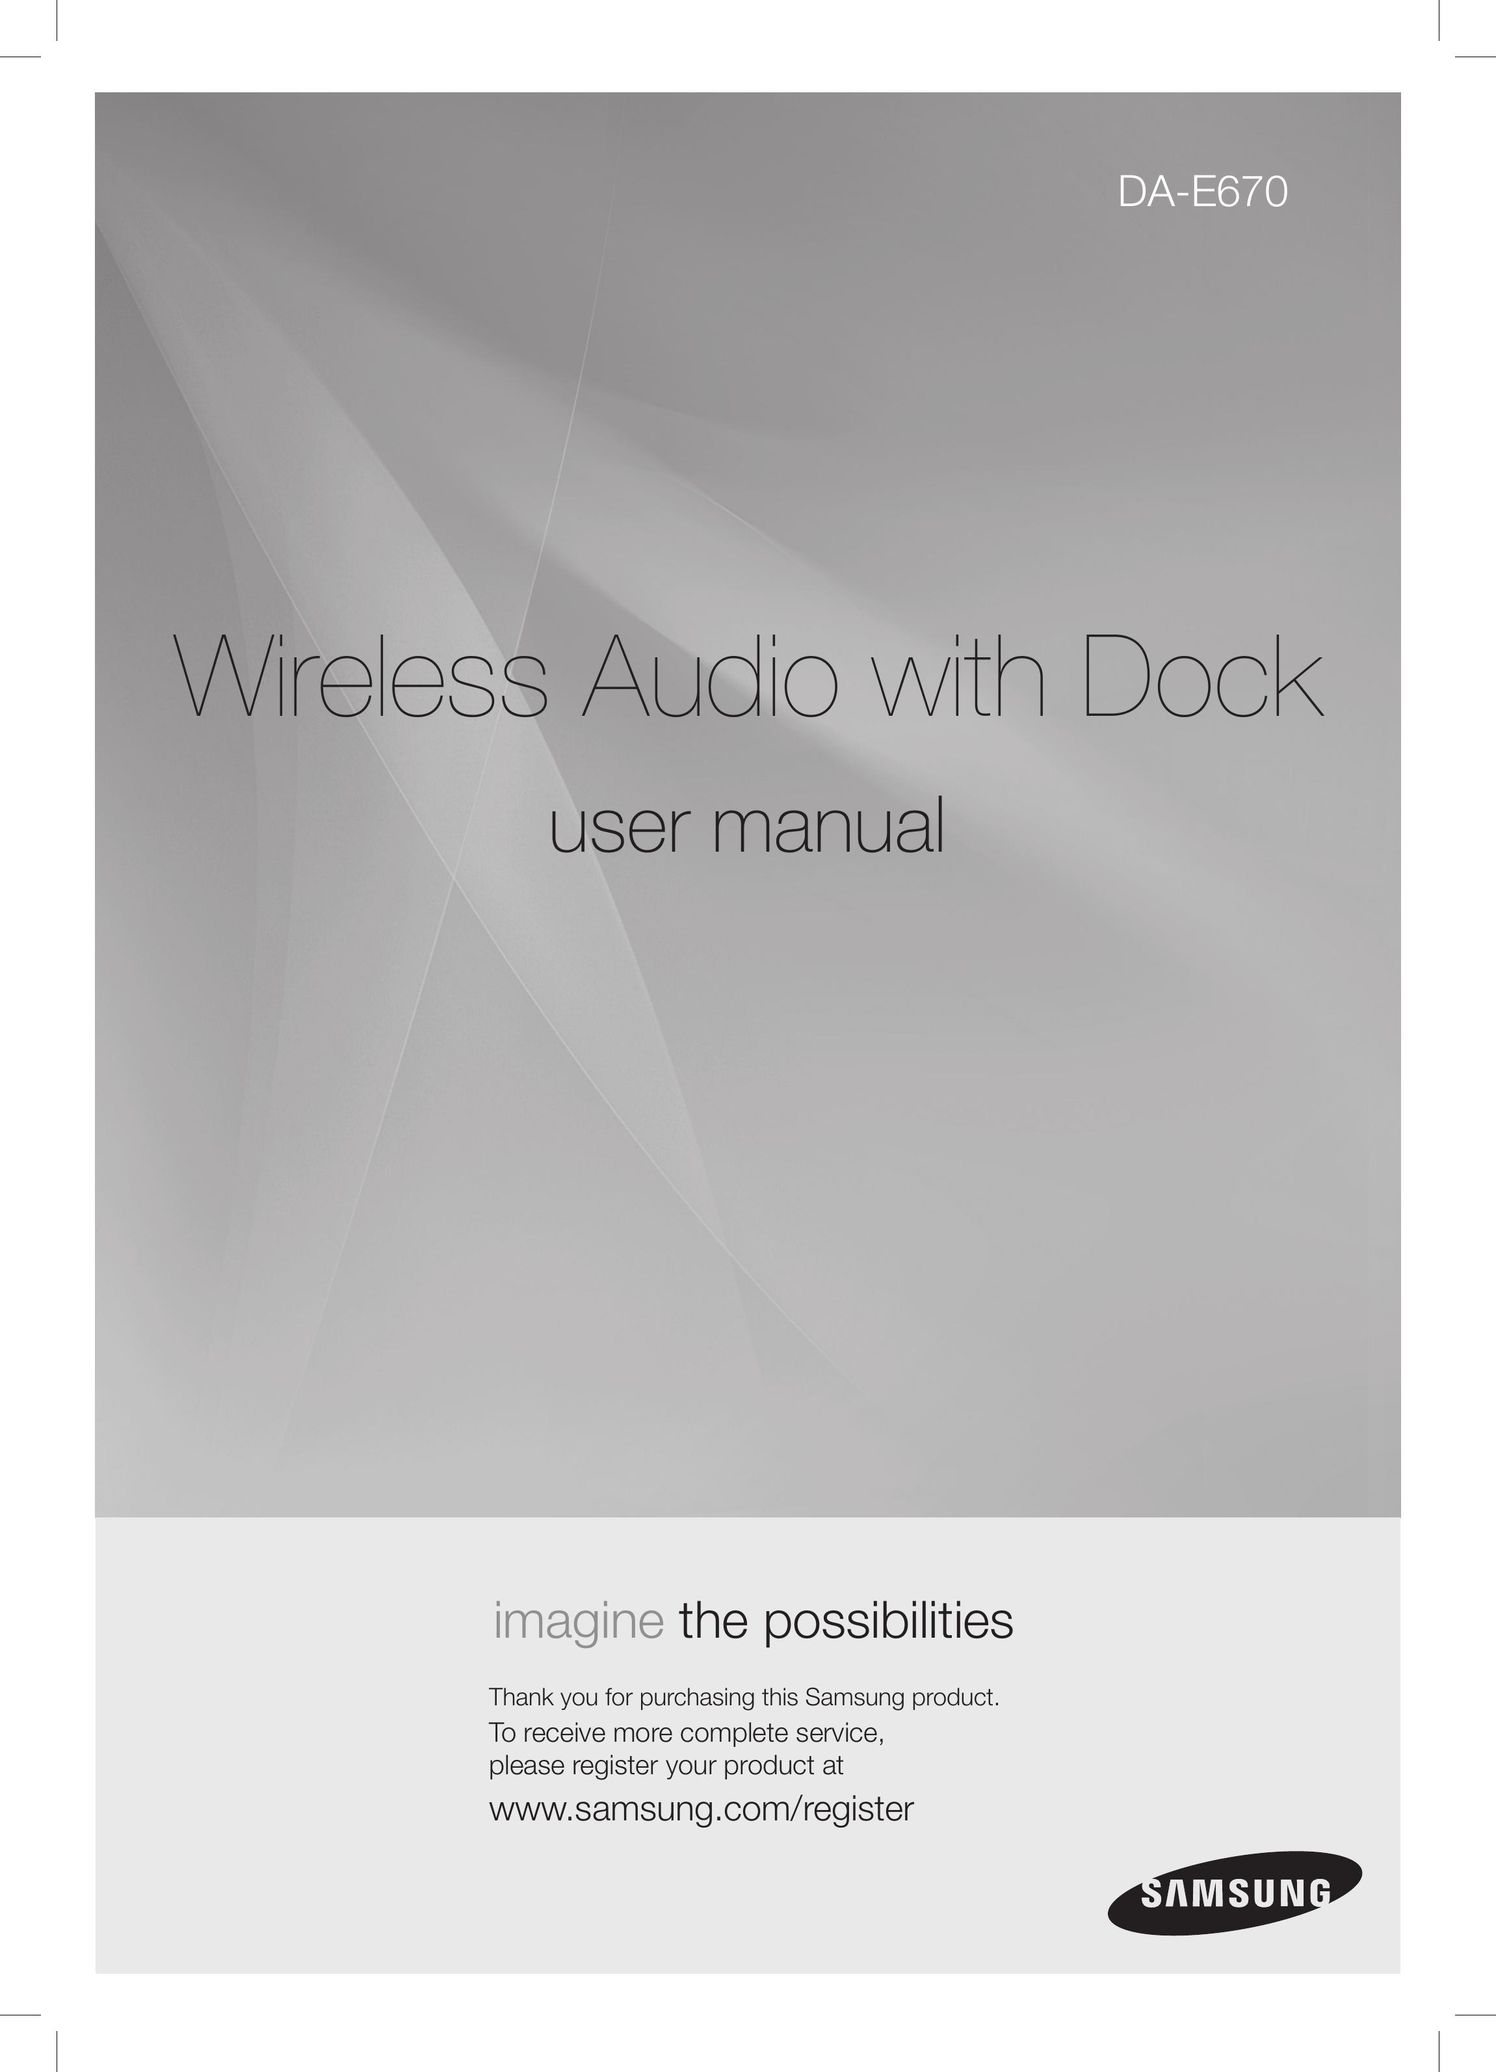 Samsung DA-E670 MP3 Docking Station User Manual